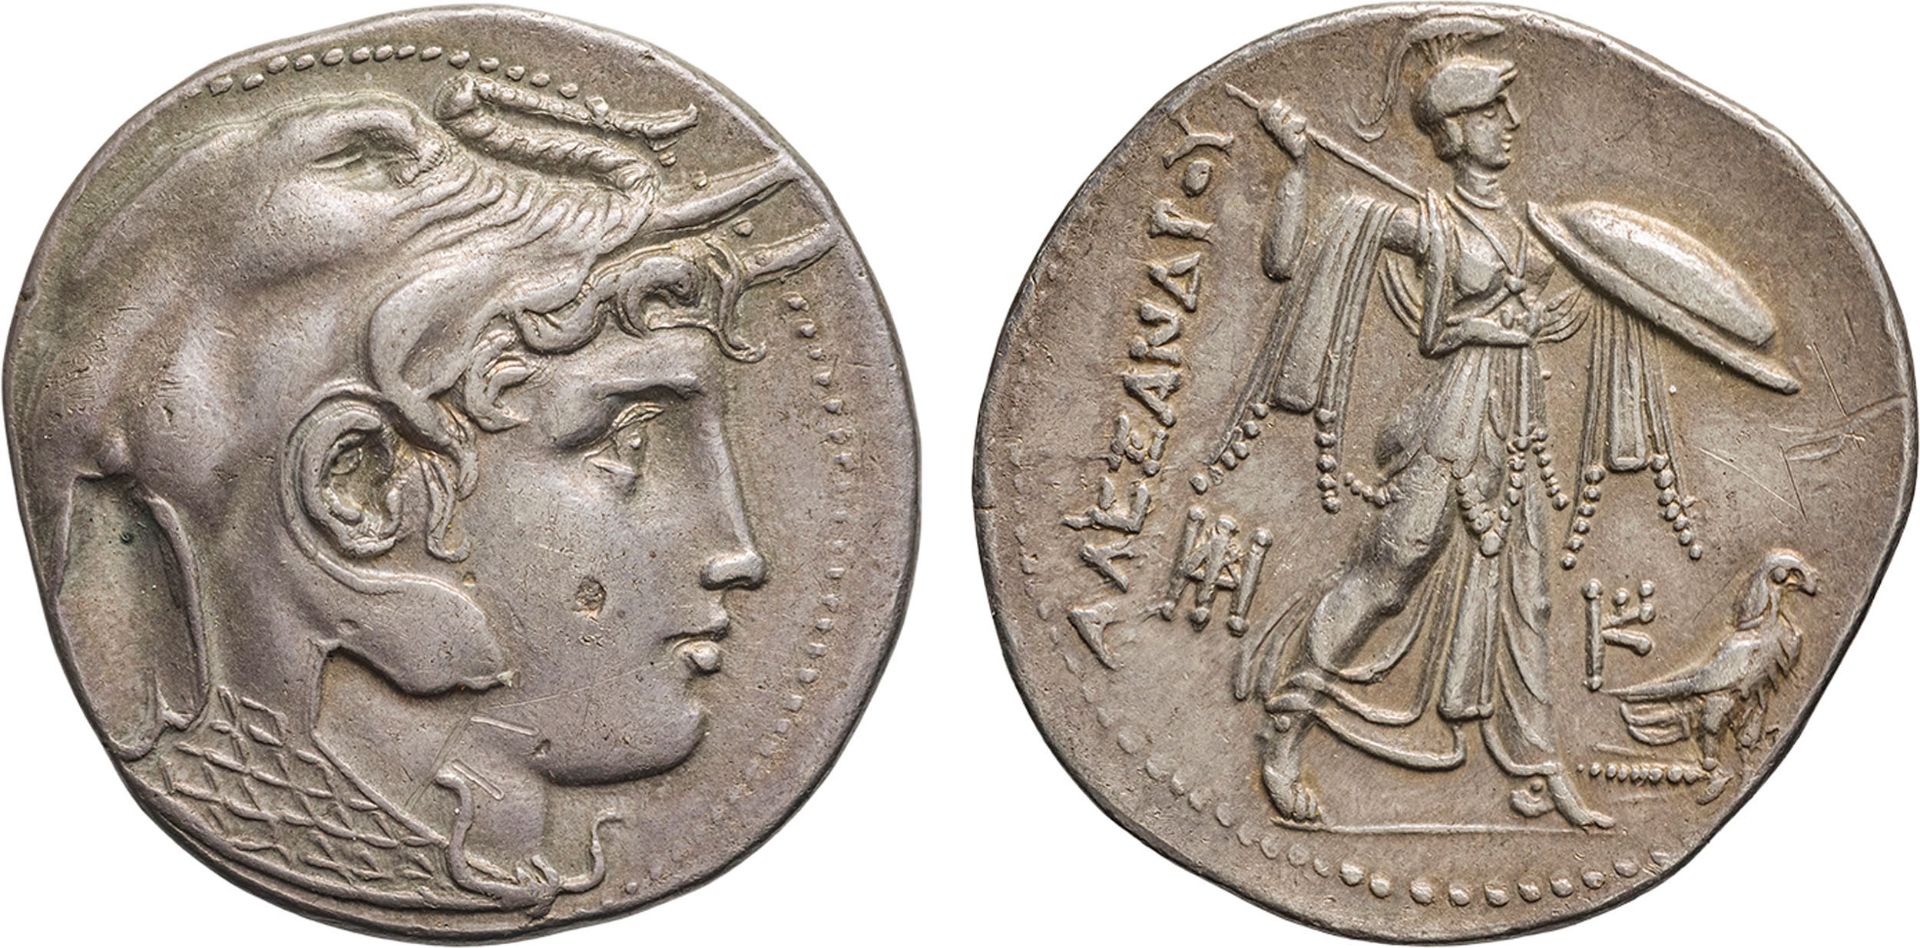 MONETE GRECHE. EGITTO. TOLOMEO (323-285 A.C.). TETRADRACMA